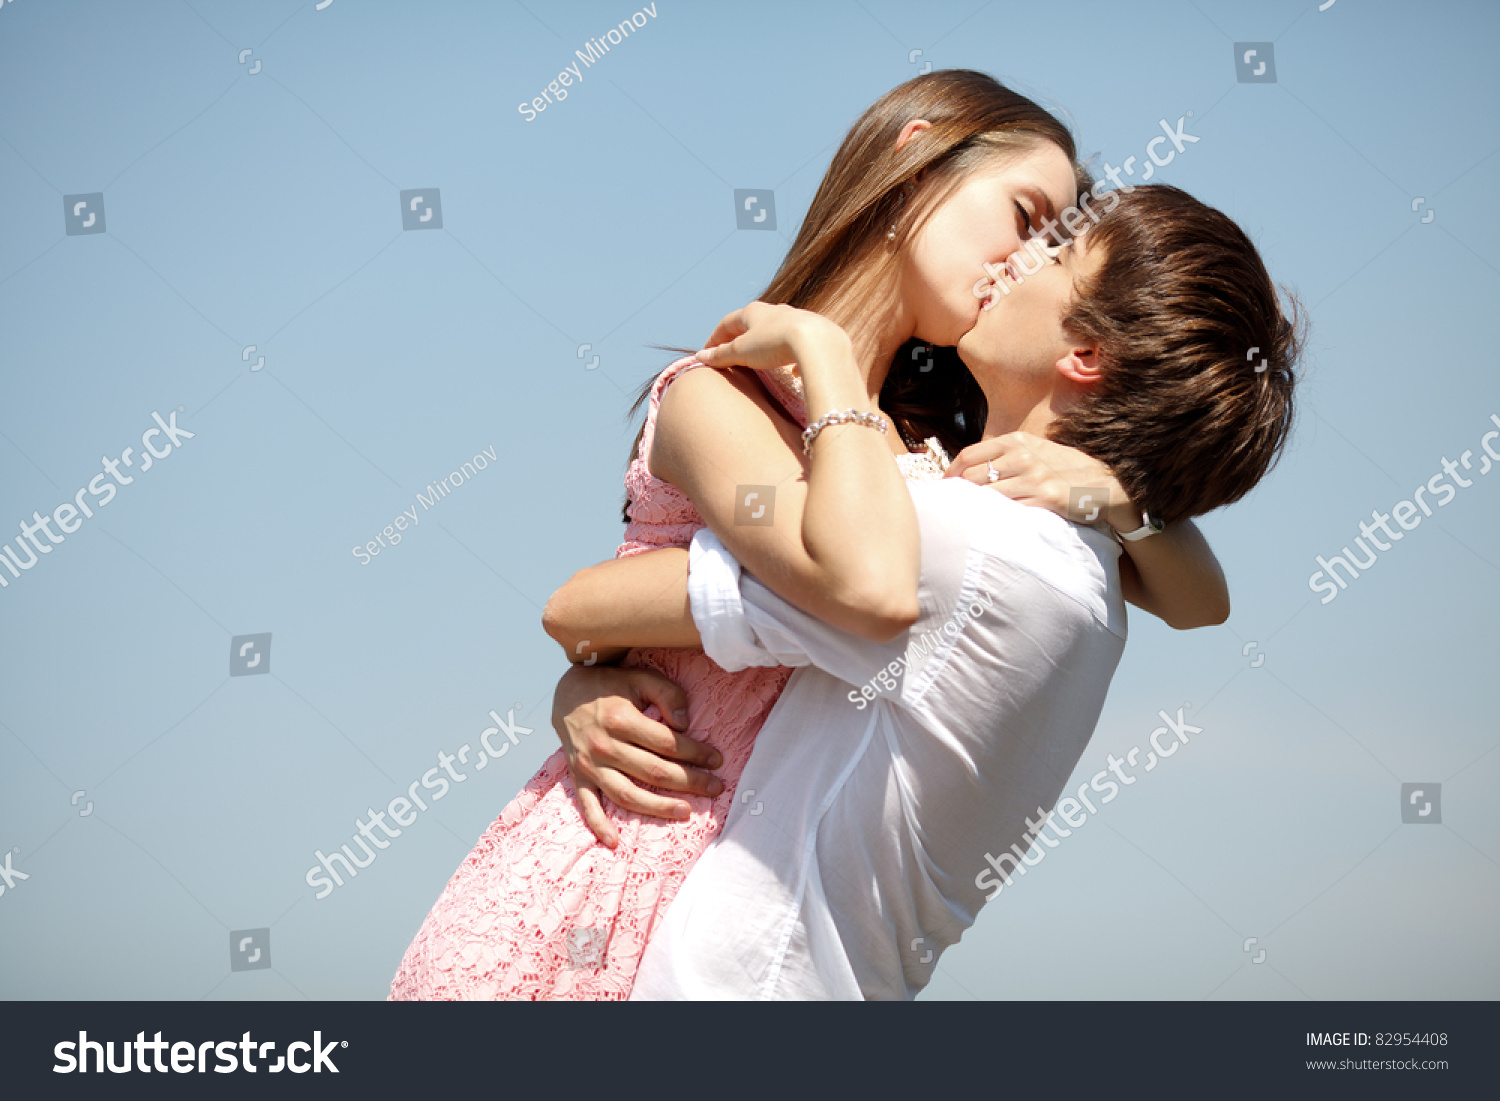 показать видео как голая девочка целуется с мальчиком фото 11